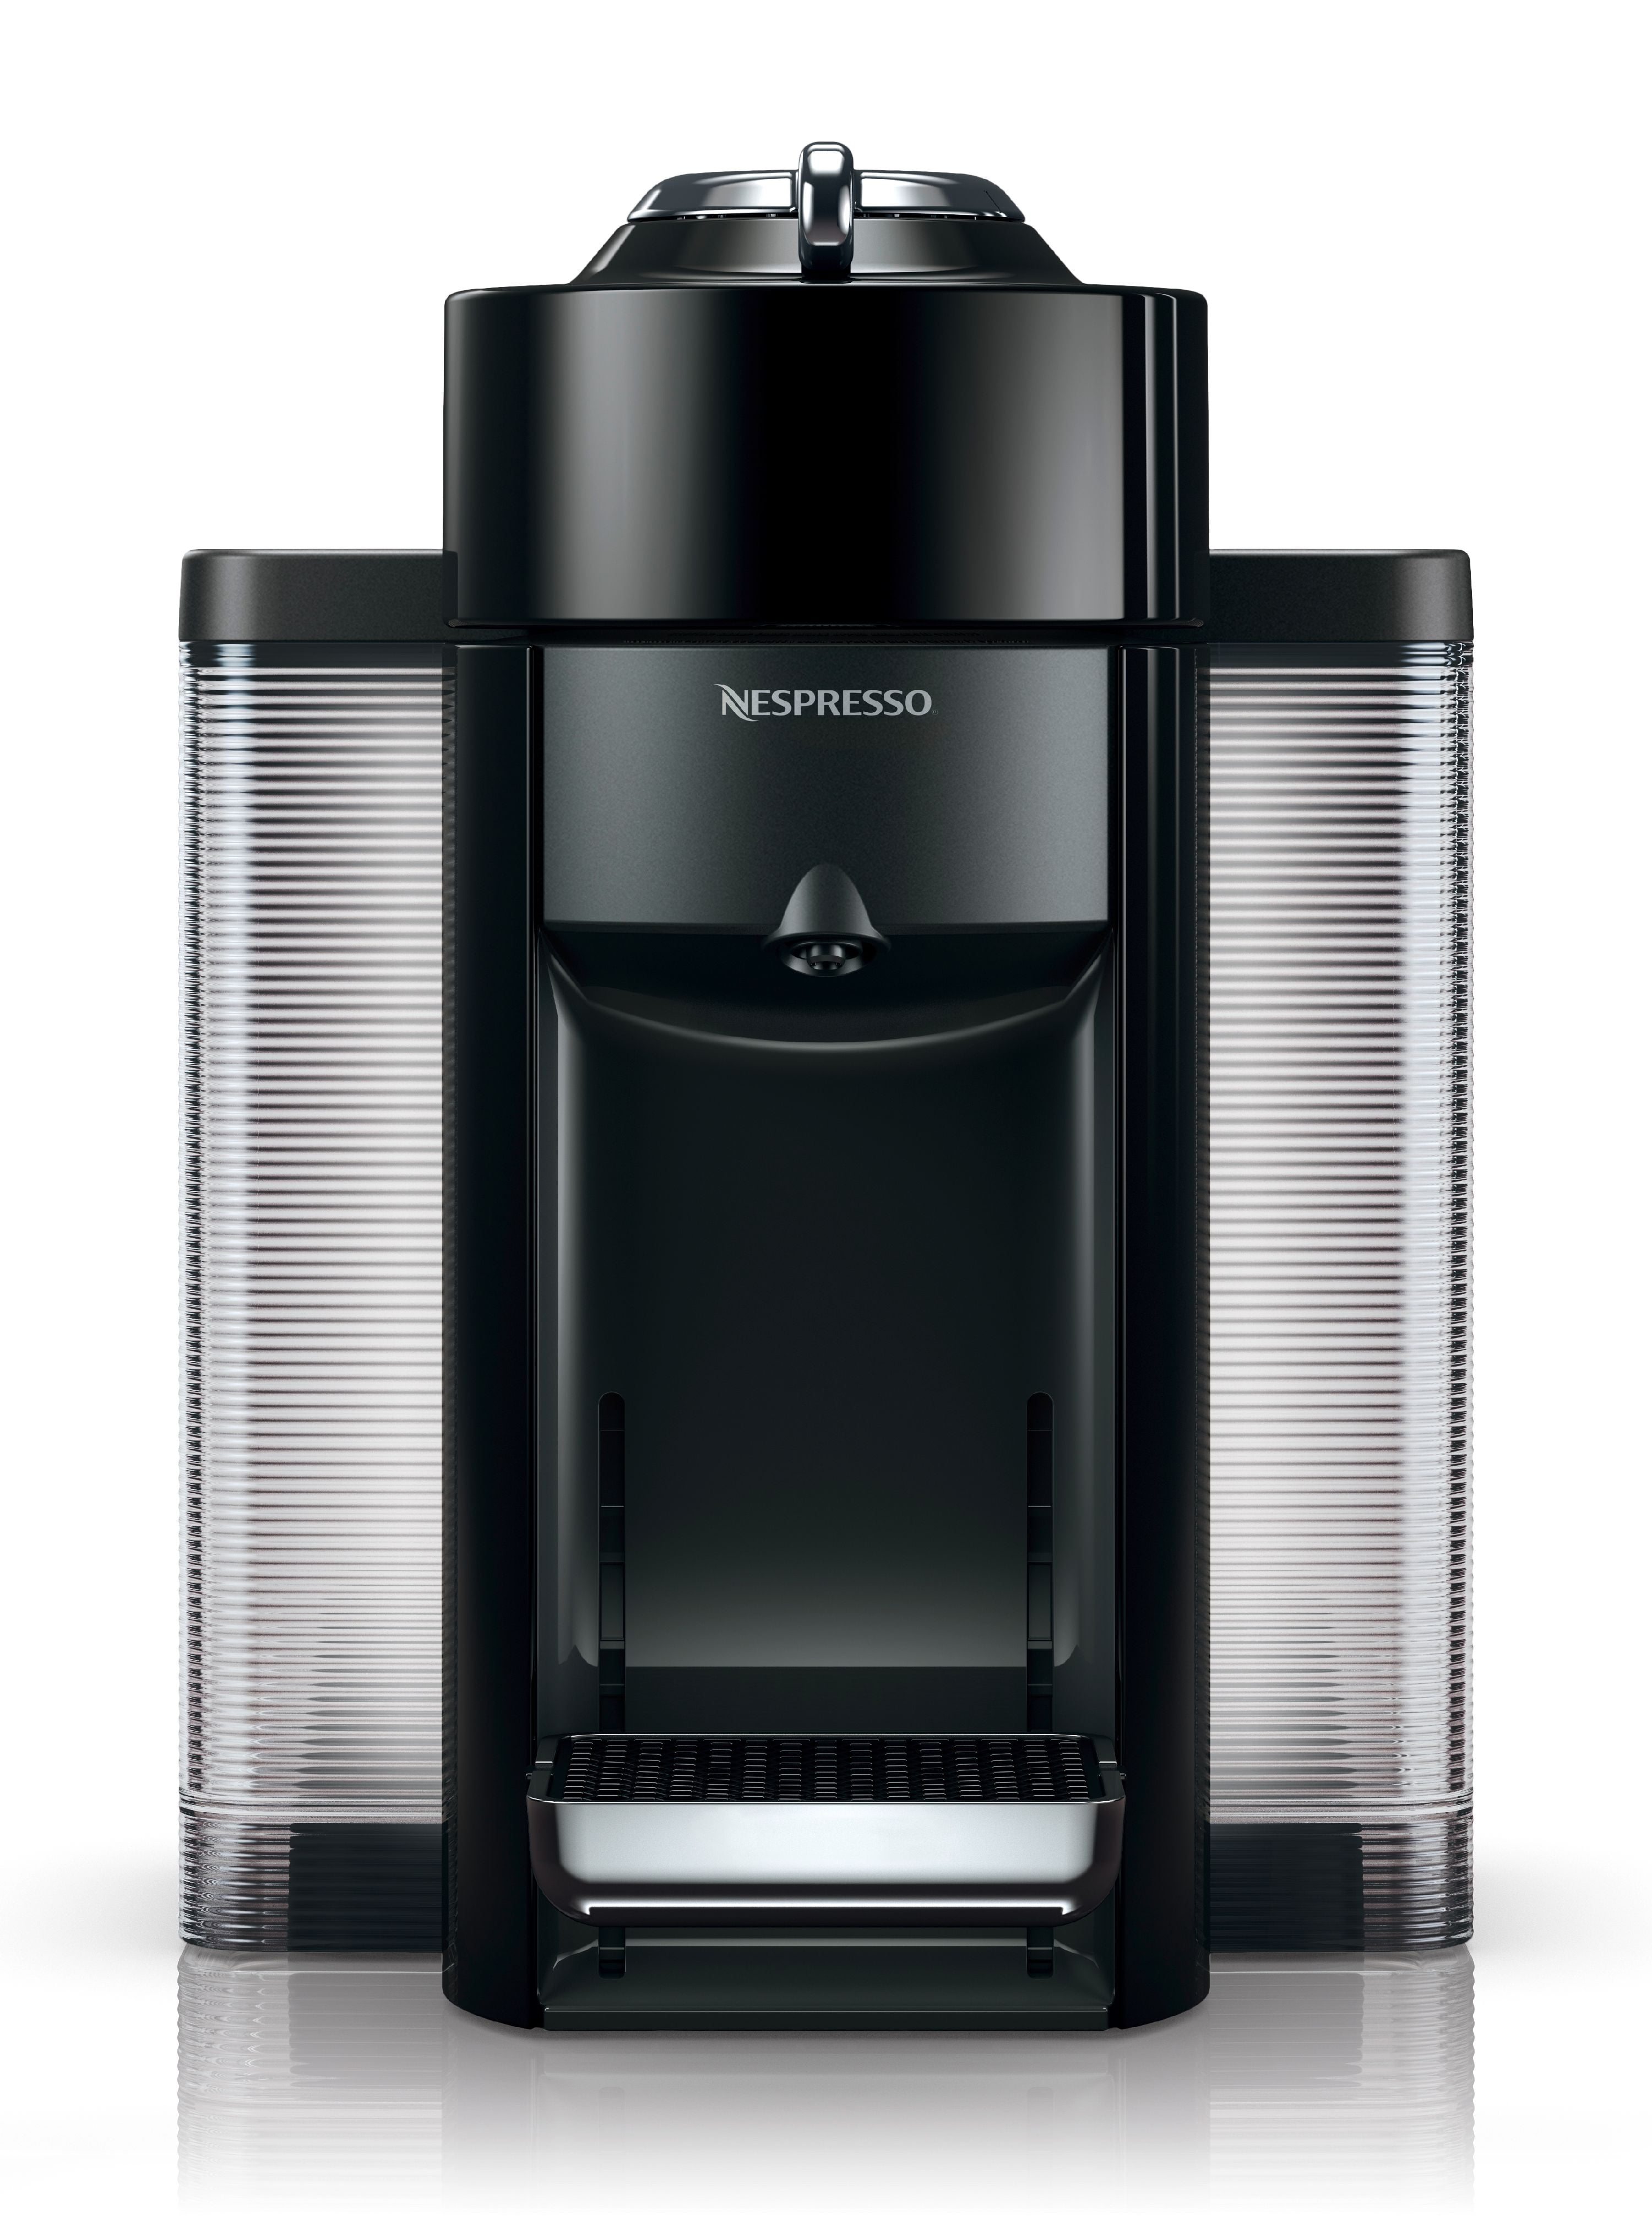 Nespresso Vertuo Coffee and Espresso Machine by De'Longhi, Black